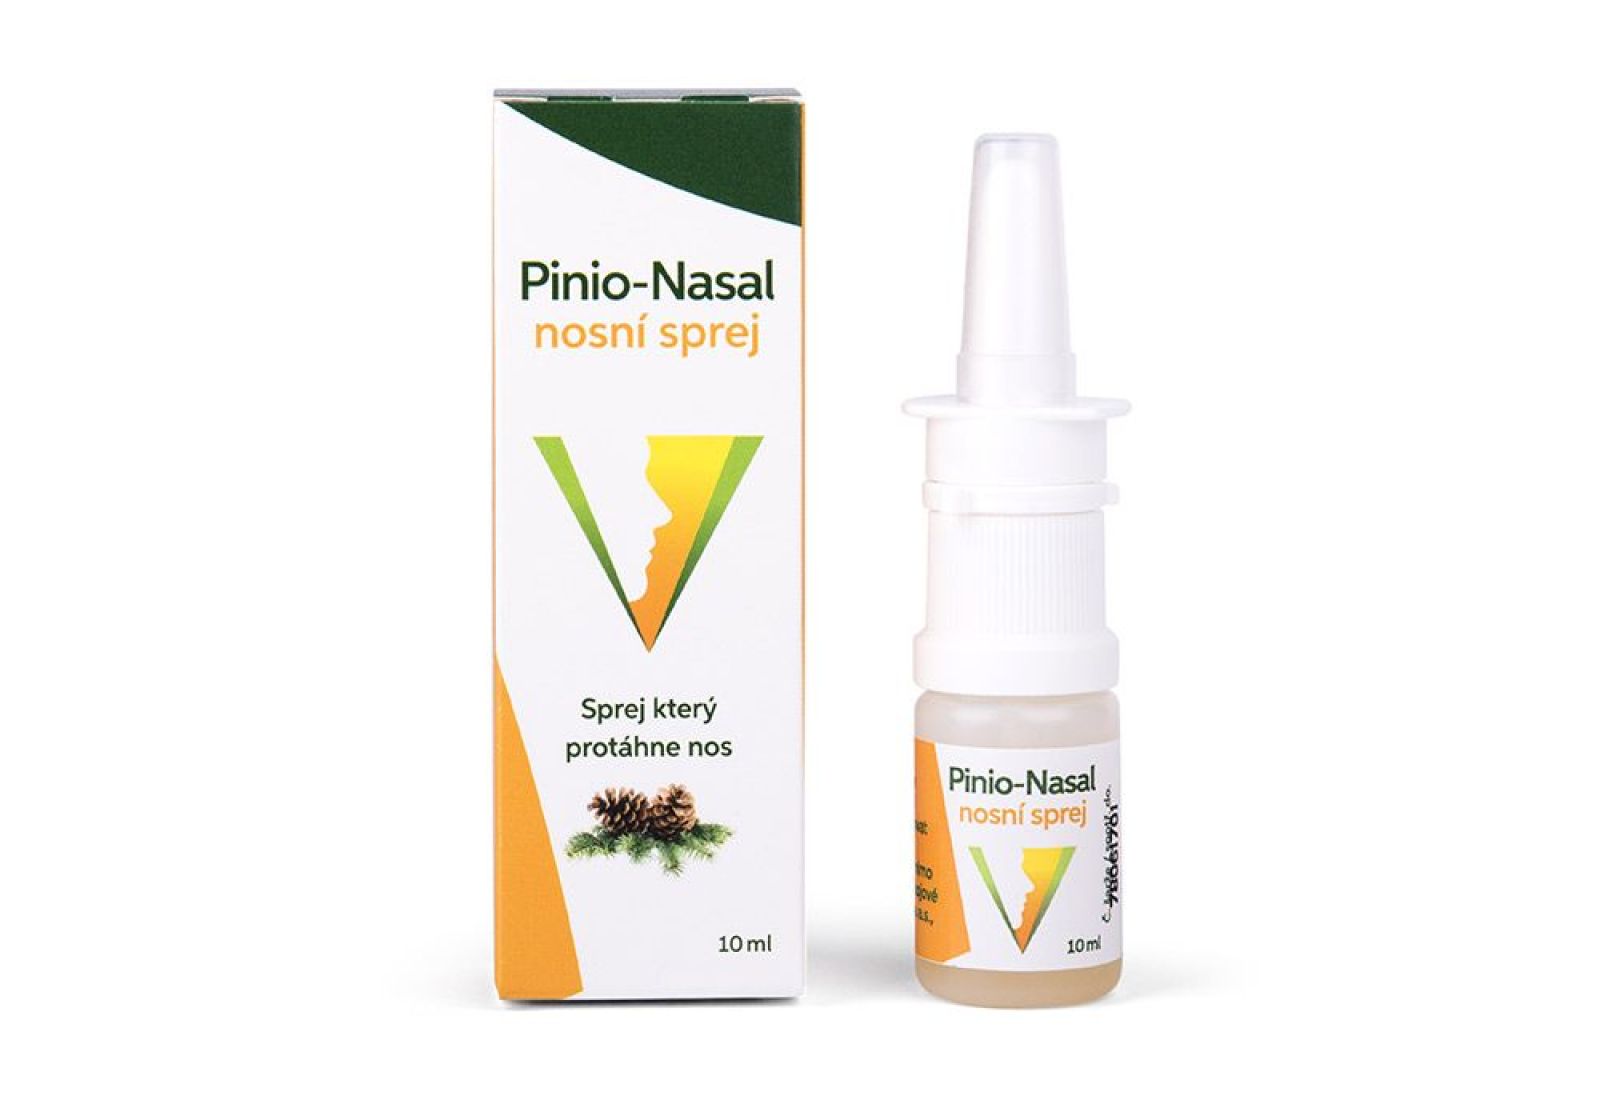 Pinio-Nasal nosní sprej